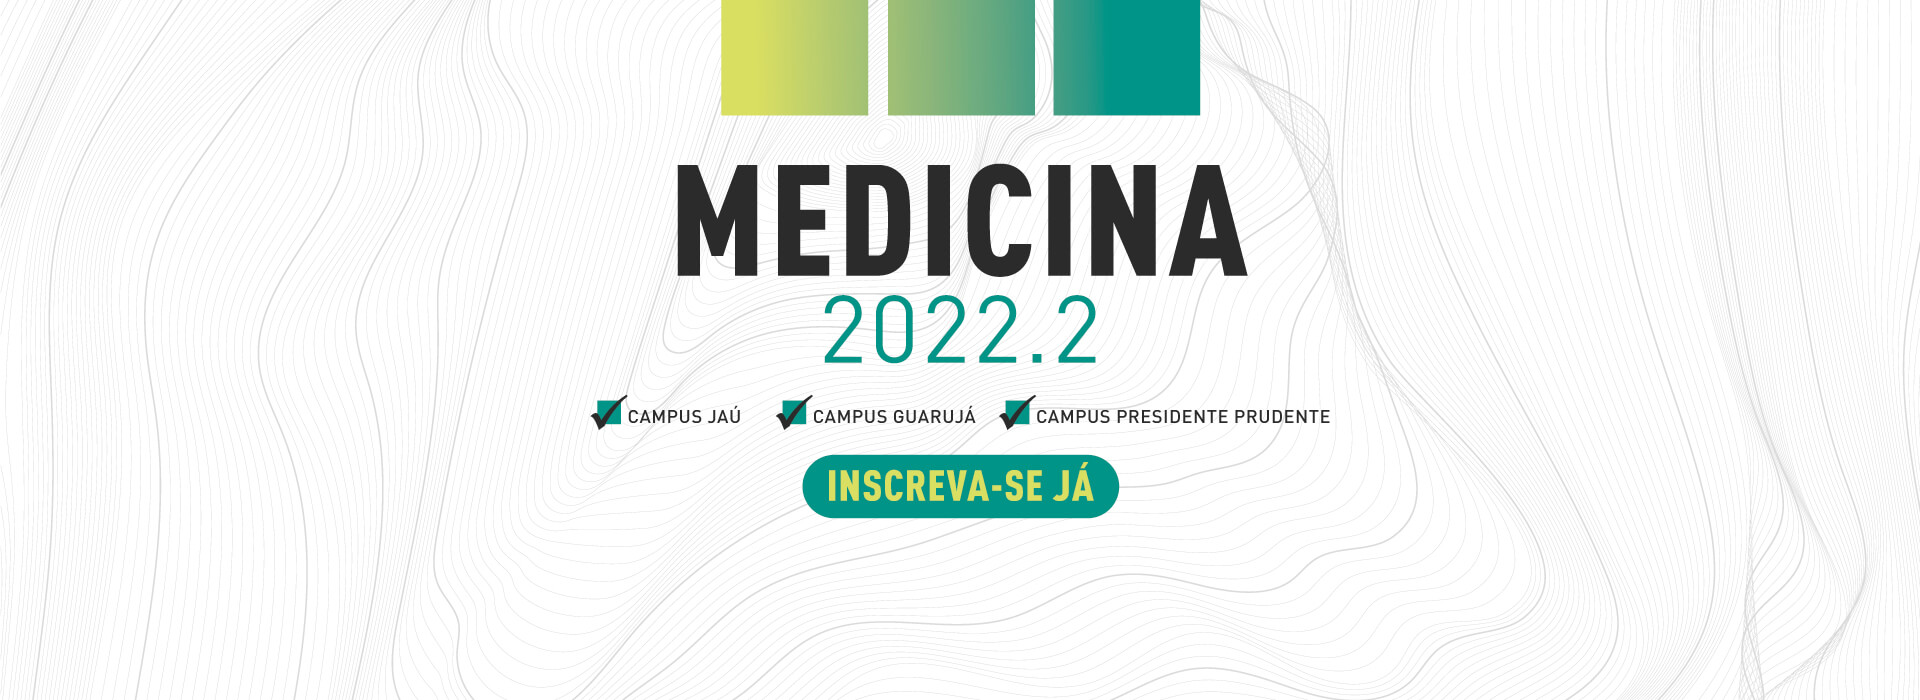 Vestibular 2022 - MEDICINA